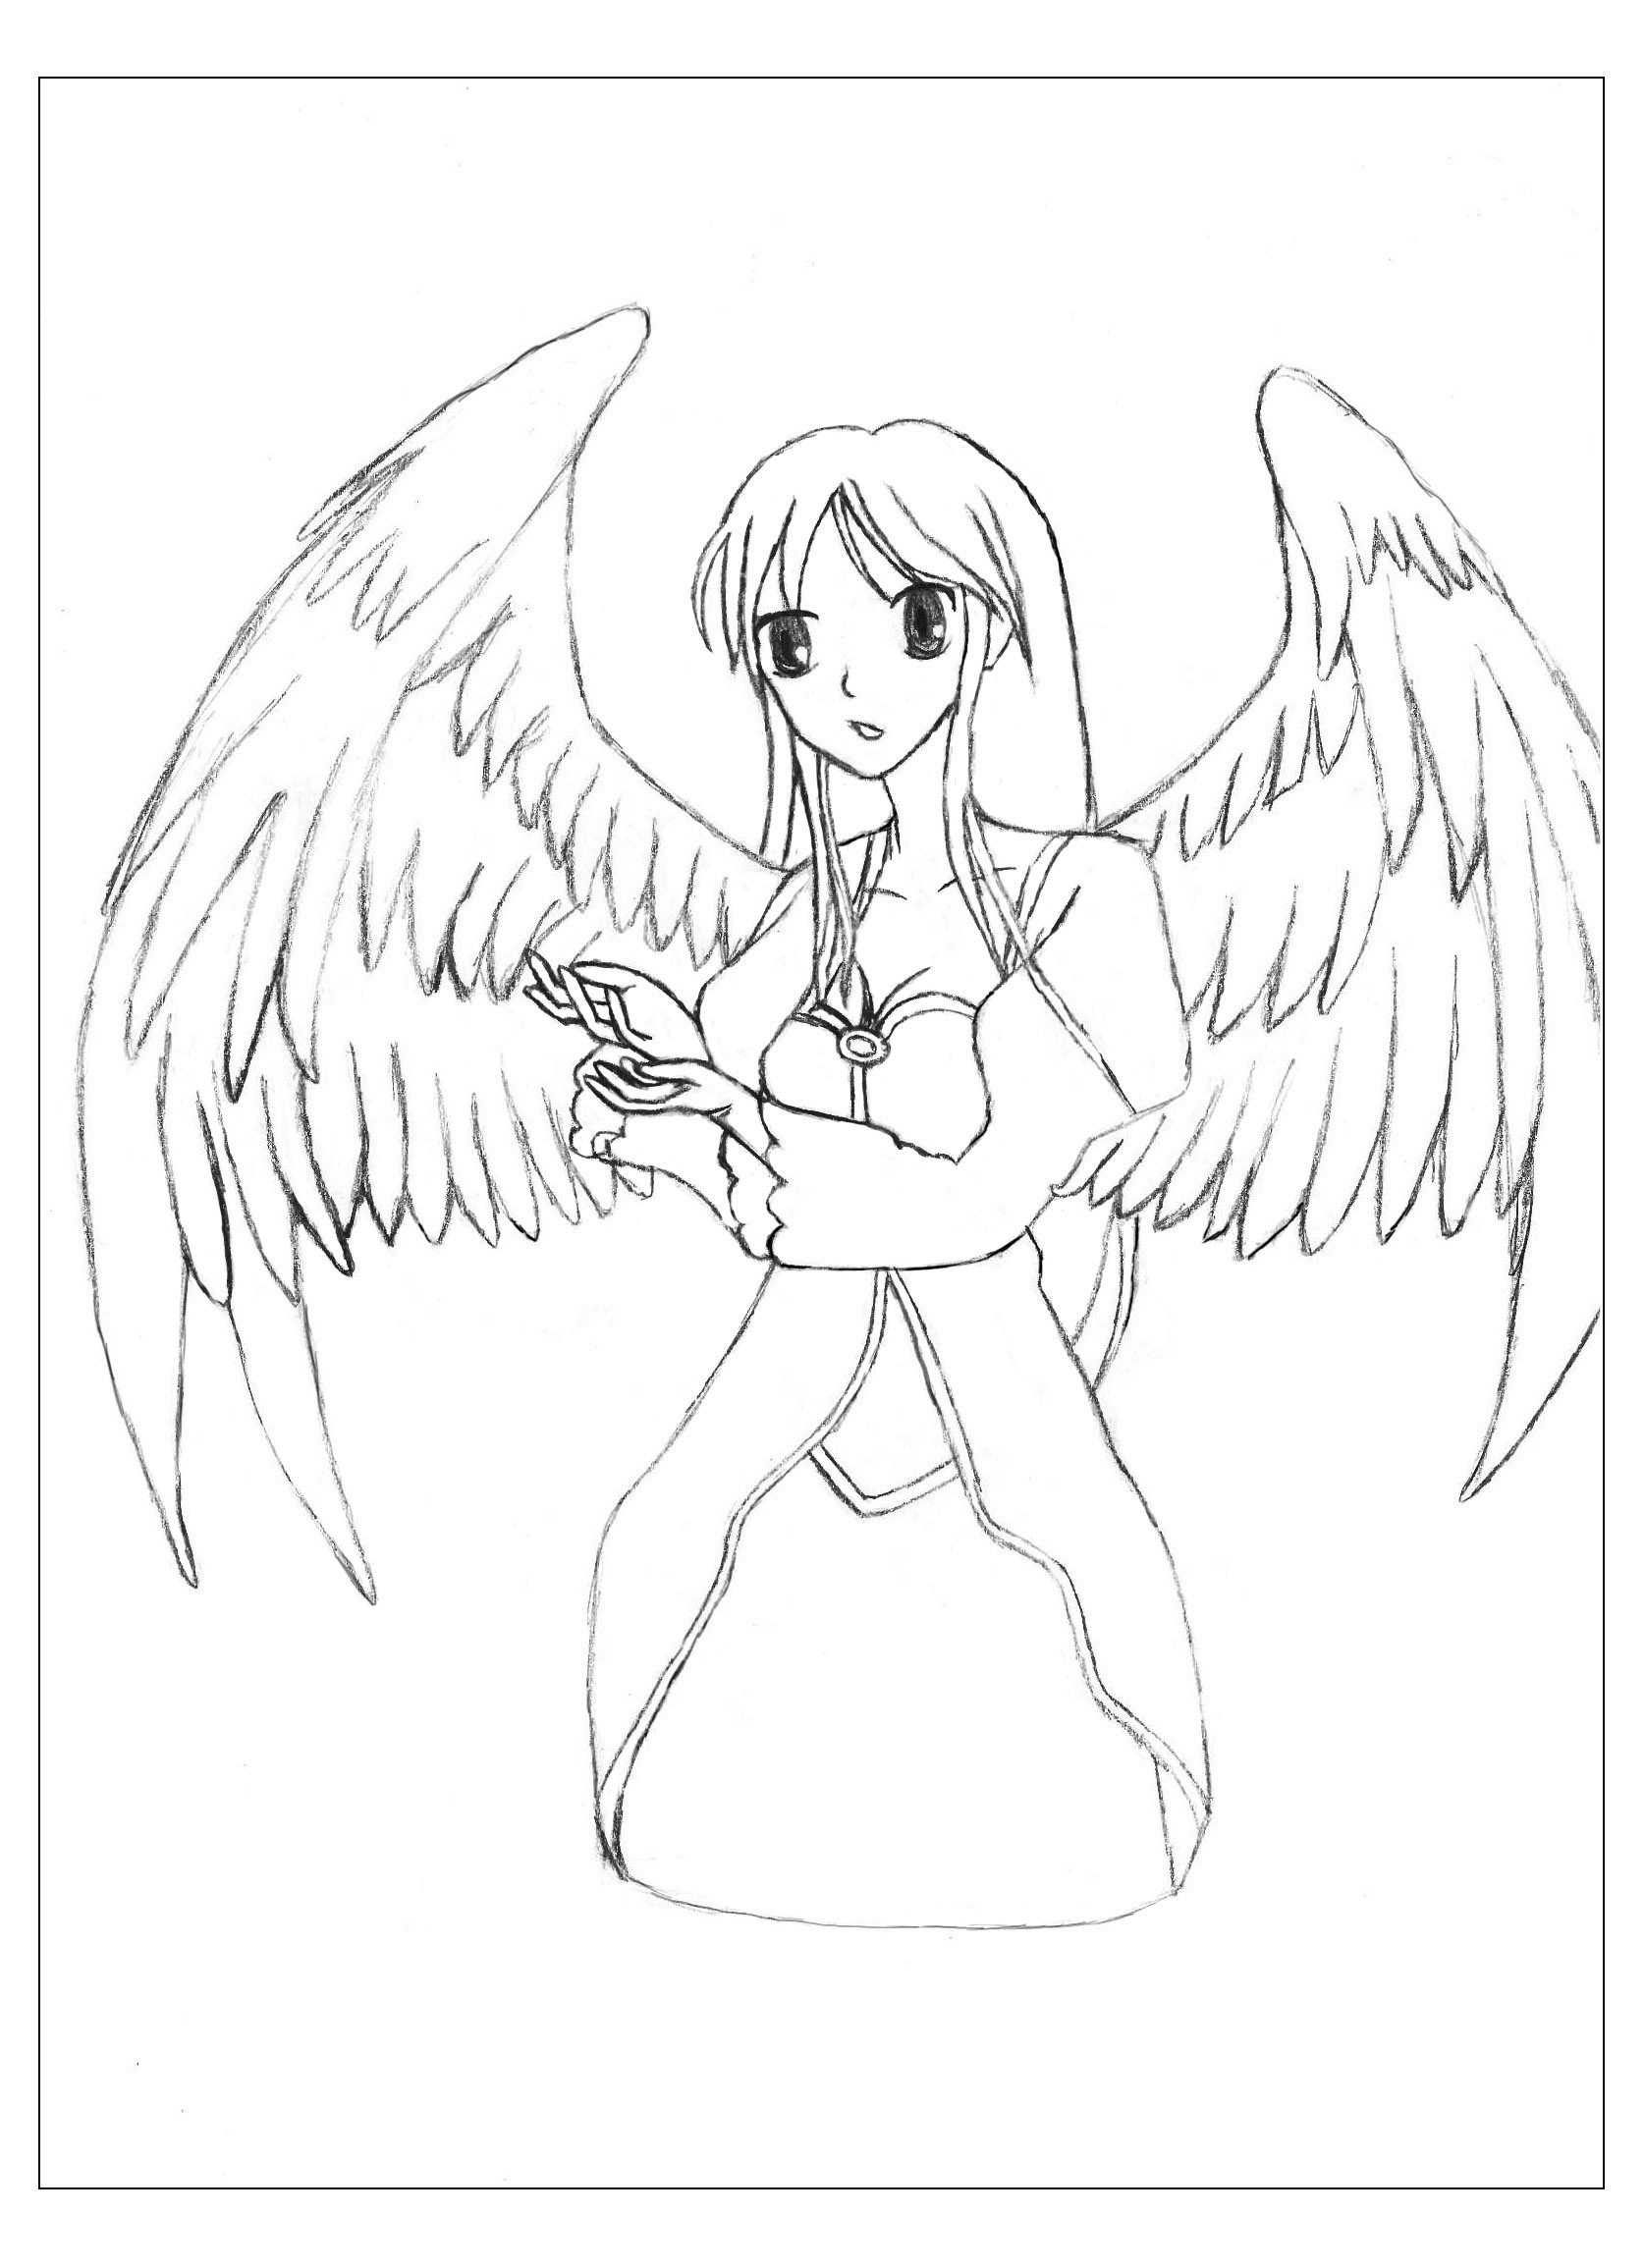 Um desenho original e exclusivo de um anjo de Krissy!